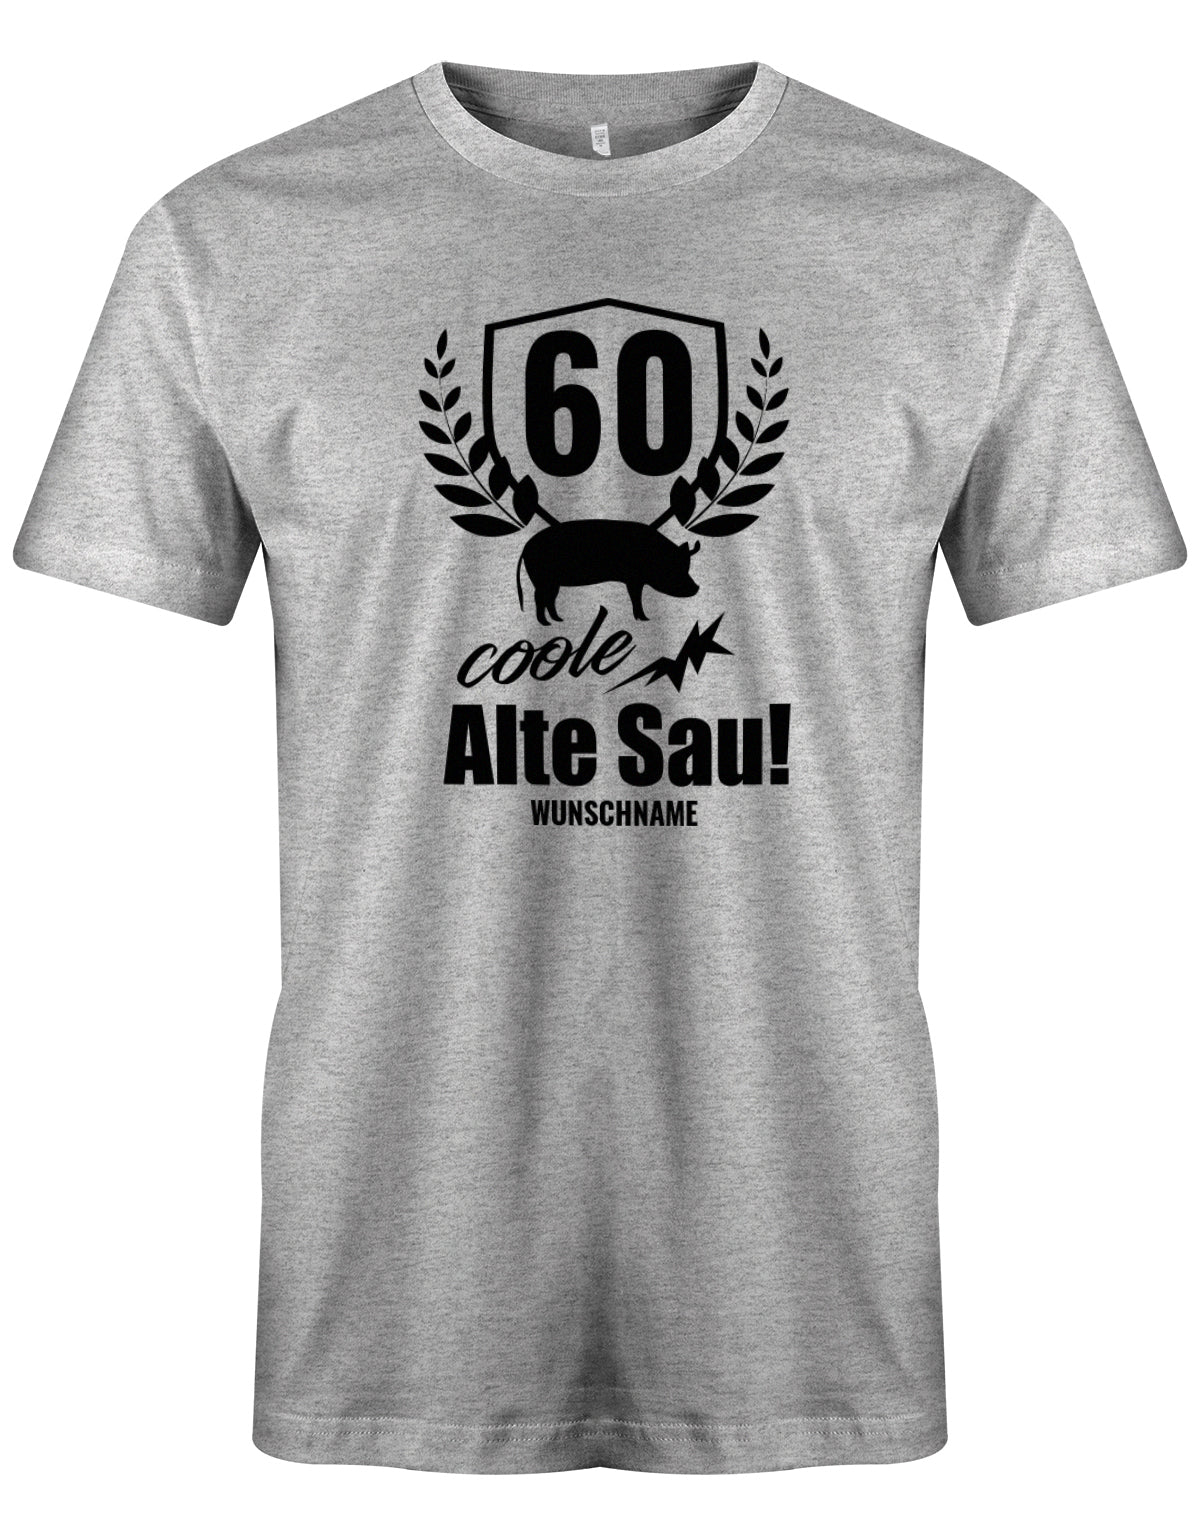 Lustiges T-Shirt zum 60. Geburtstag für den Mann Bedruckt mit 60 coole Alte Sau! mit Wunschname. Grau